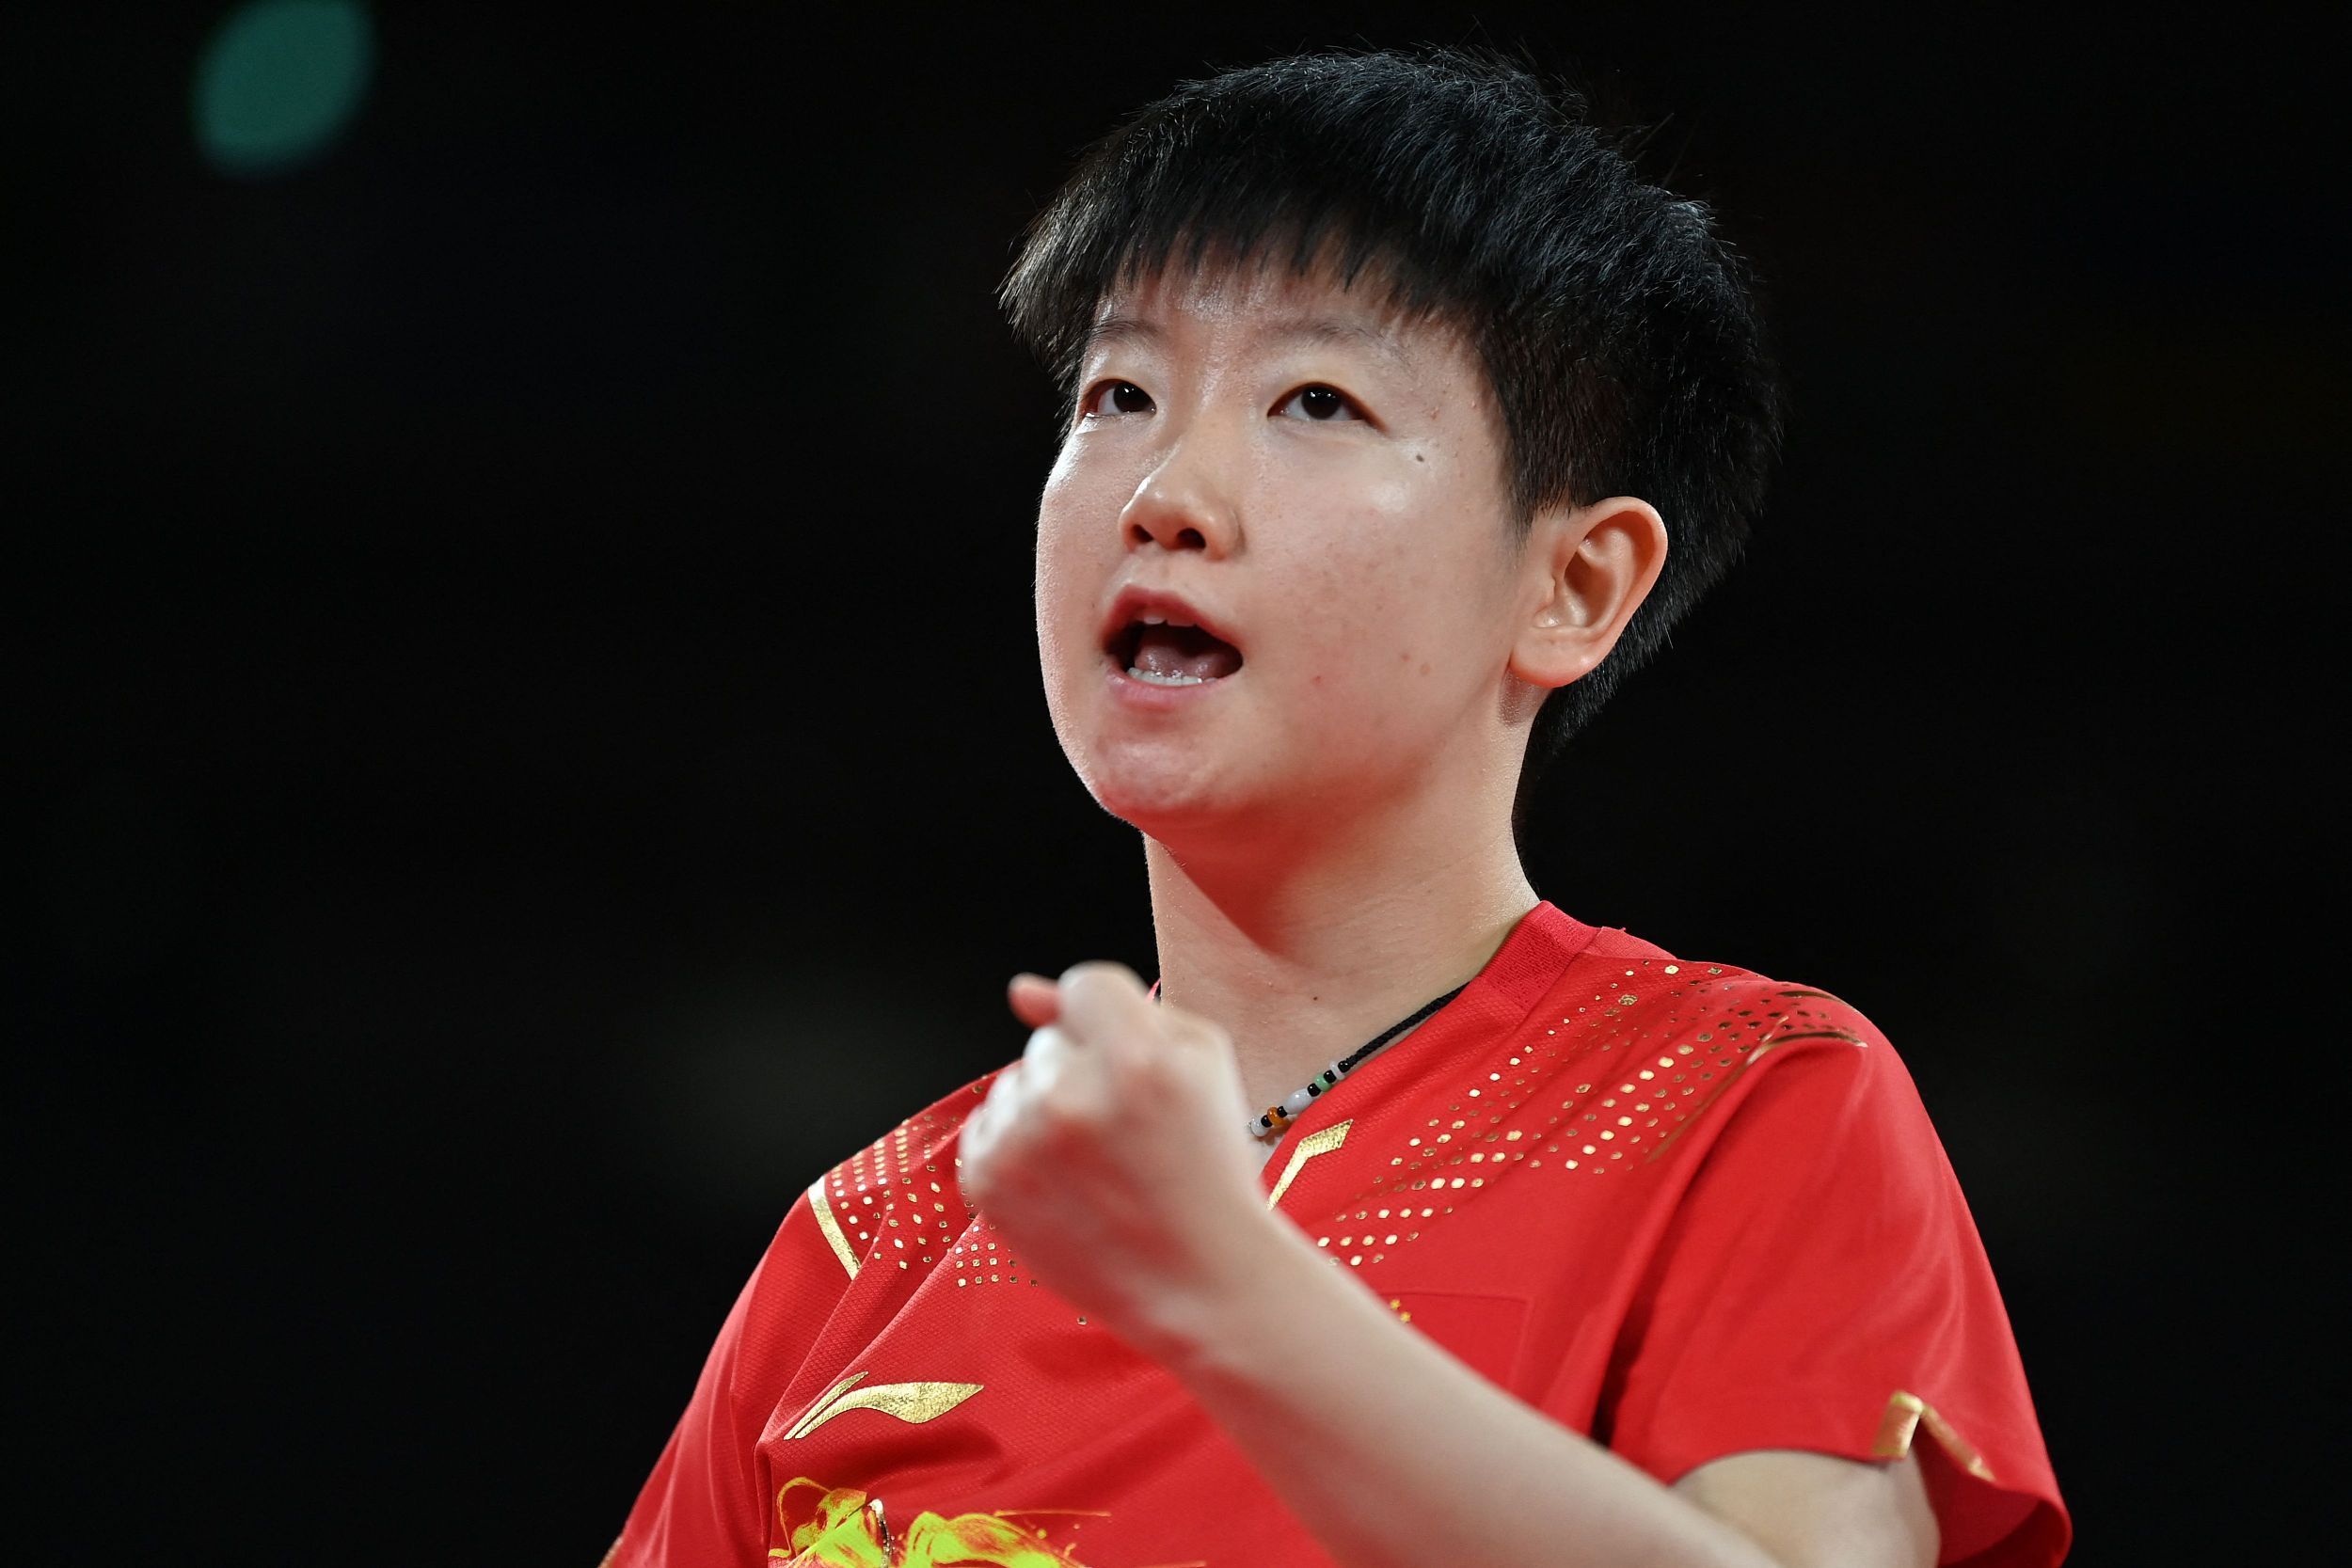 东京奥运会乒乓球女子单打半决赛,中国选手孙颖莎以11:3,11:9,11:6,11